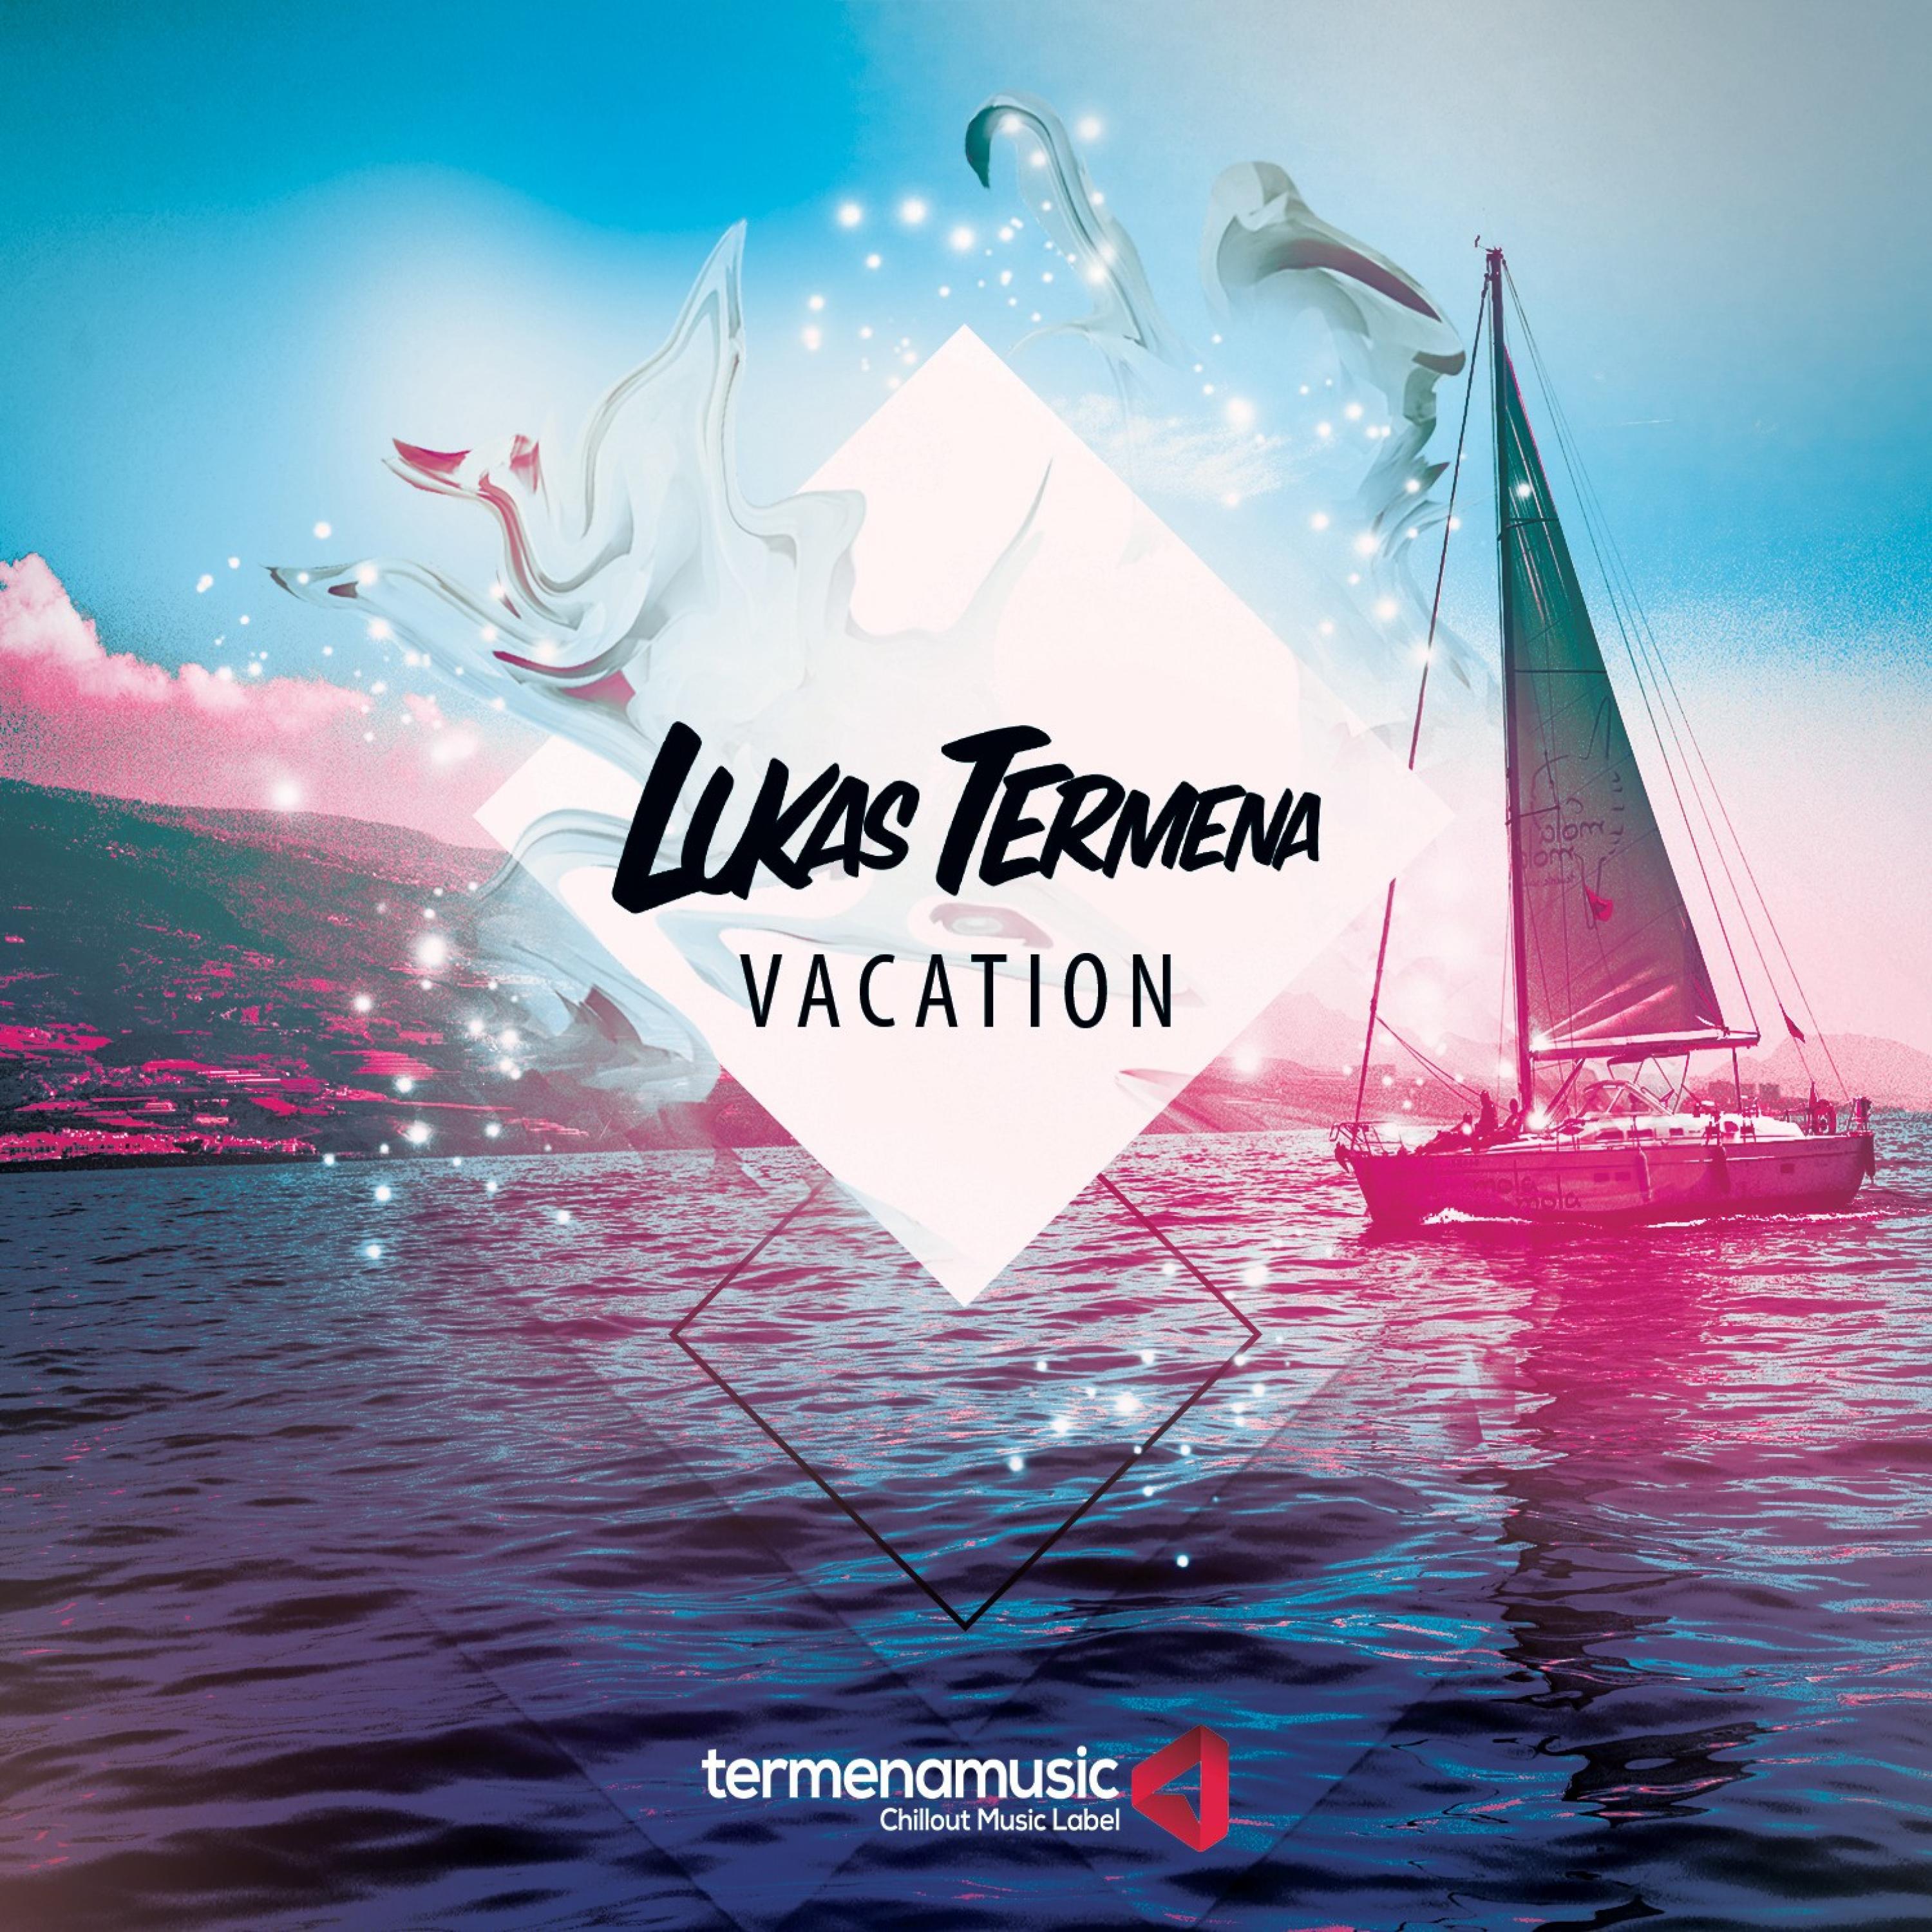 Lukas Termena - Vacation